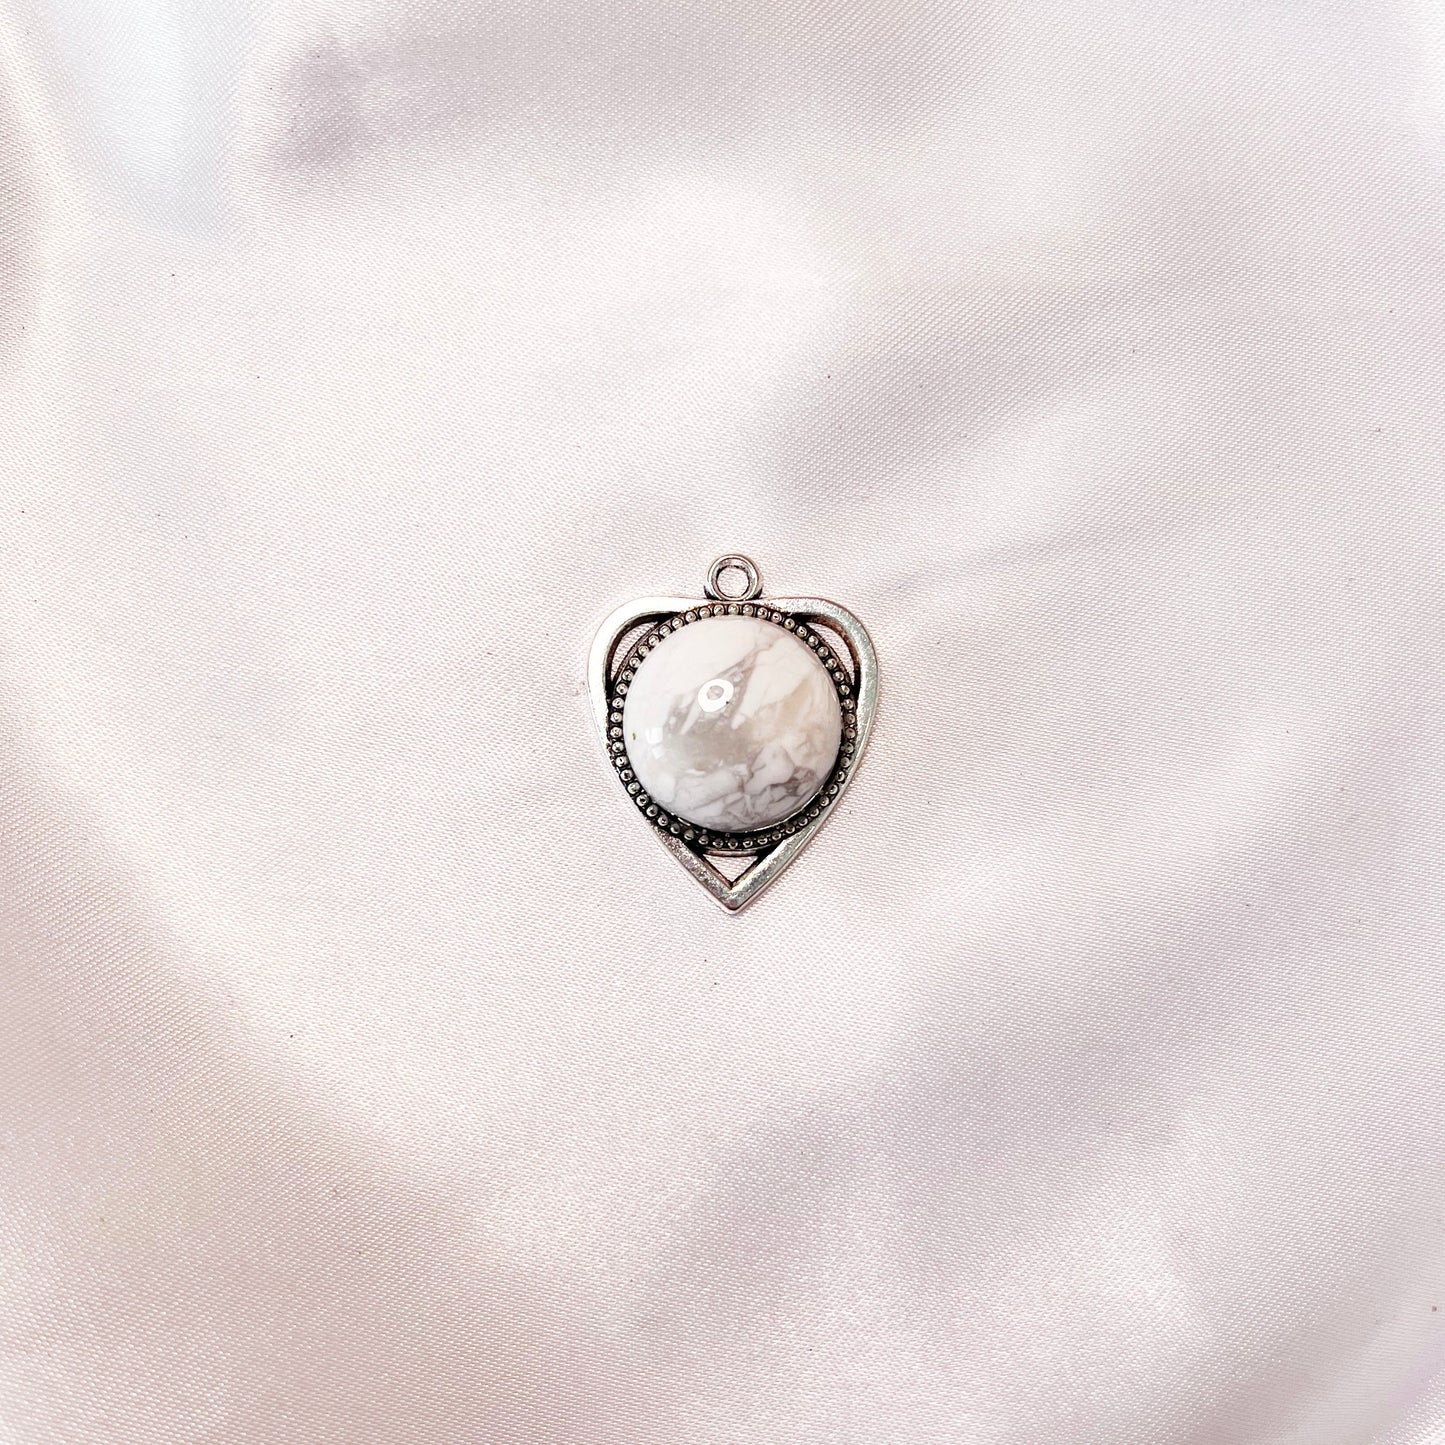 Heart shape pendant